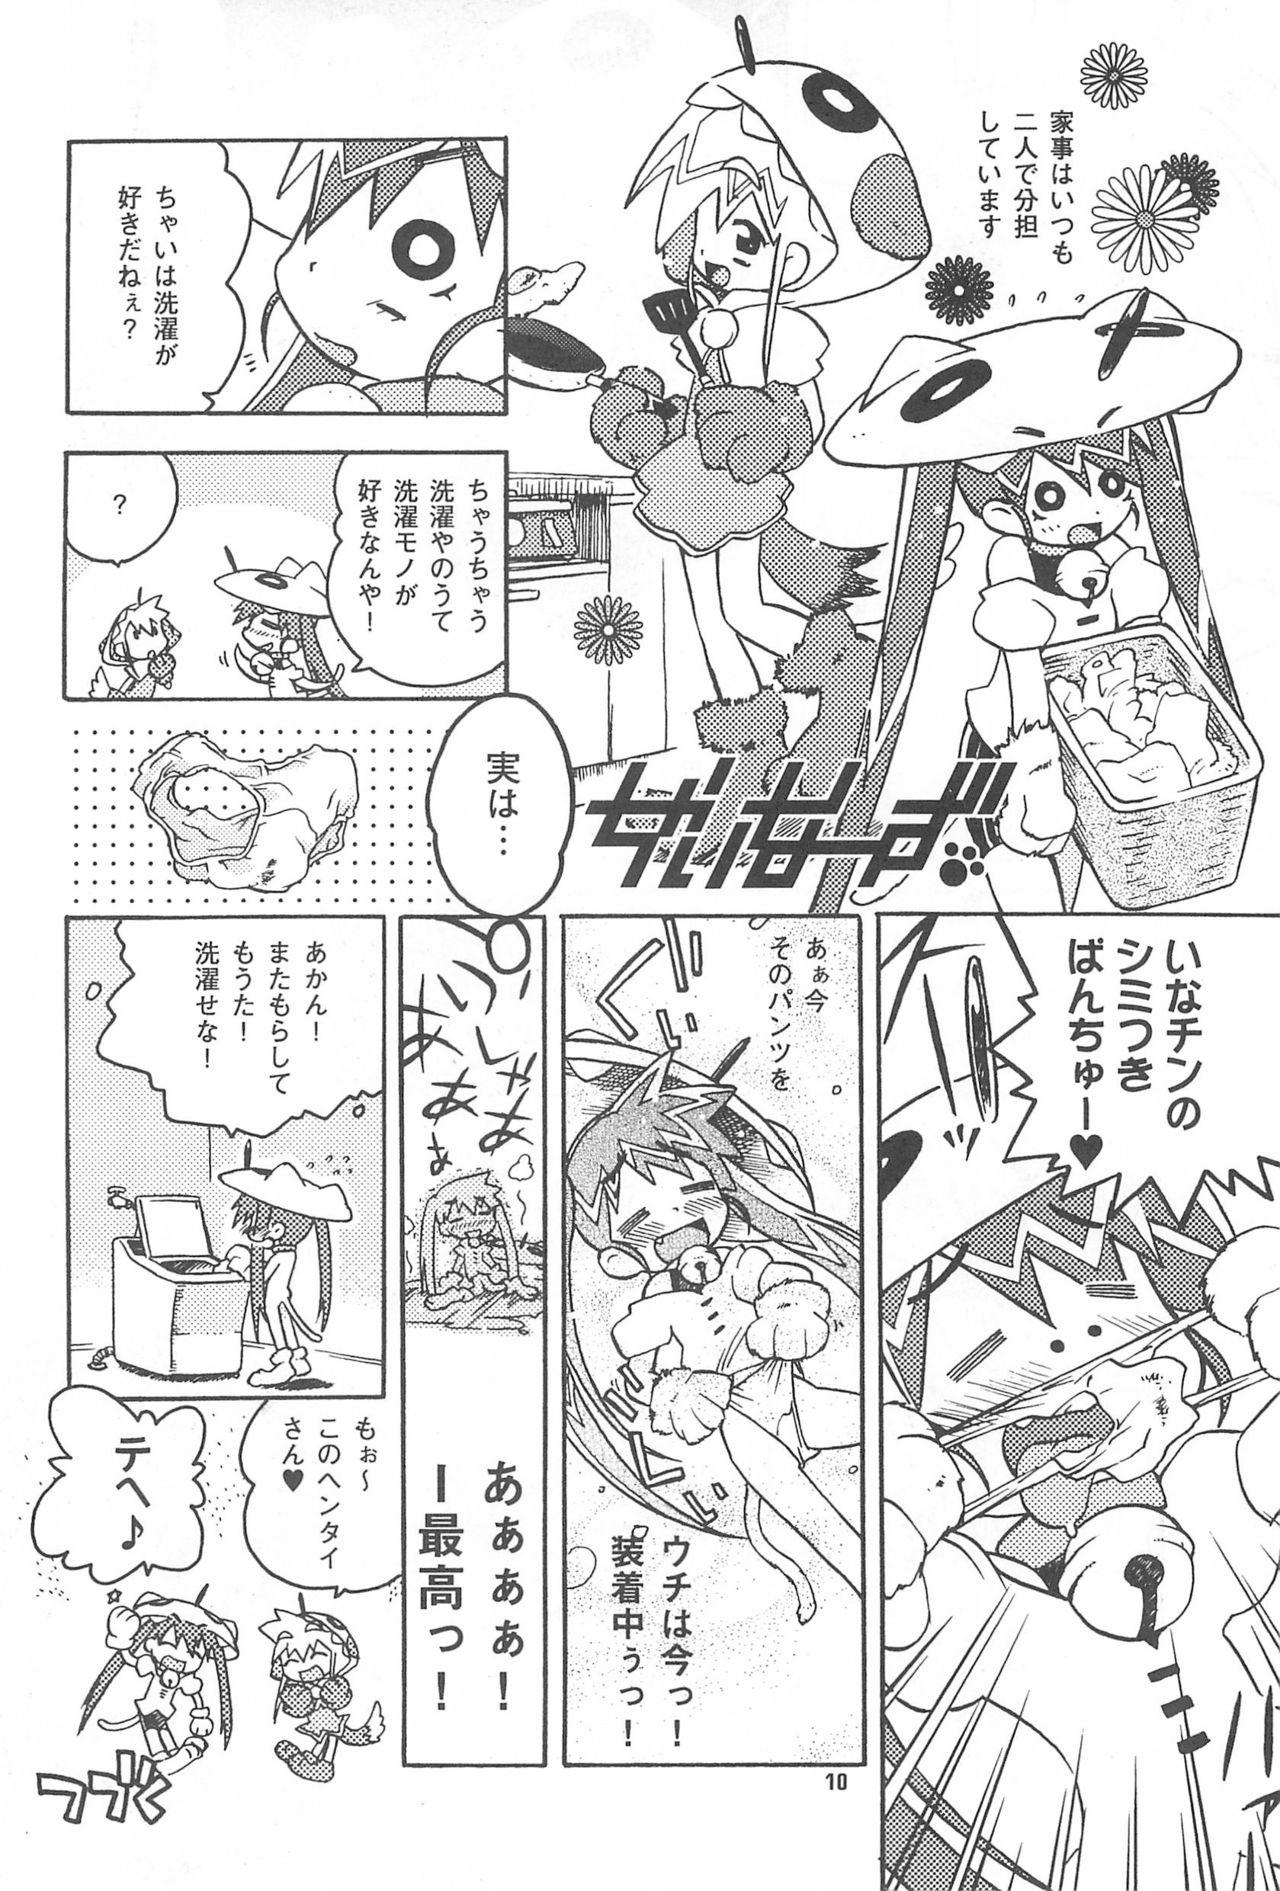 Sex Party Rokusai+2 Cam - Page 10